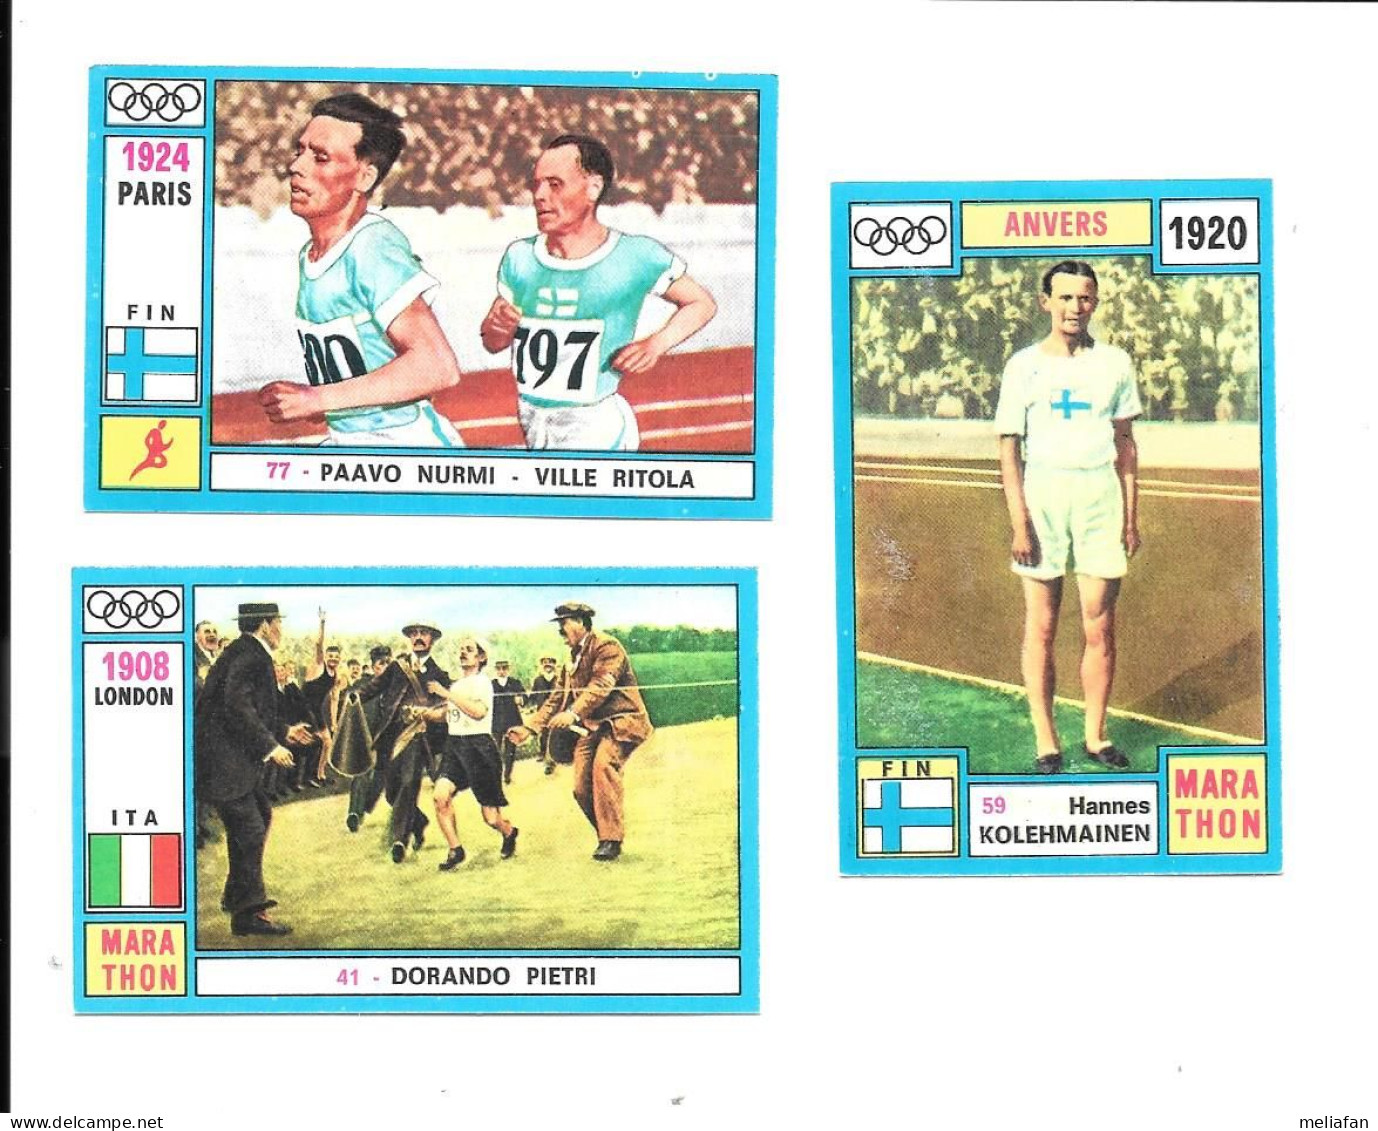 BZ77 - IMAGES PANINI ALBUM JEUX OLYMPIQUES - DORANDO PIETRI - PAAVO NUMRI  VILLE RITOLA - HANNES KOLEMAINEN - Athlétisme